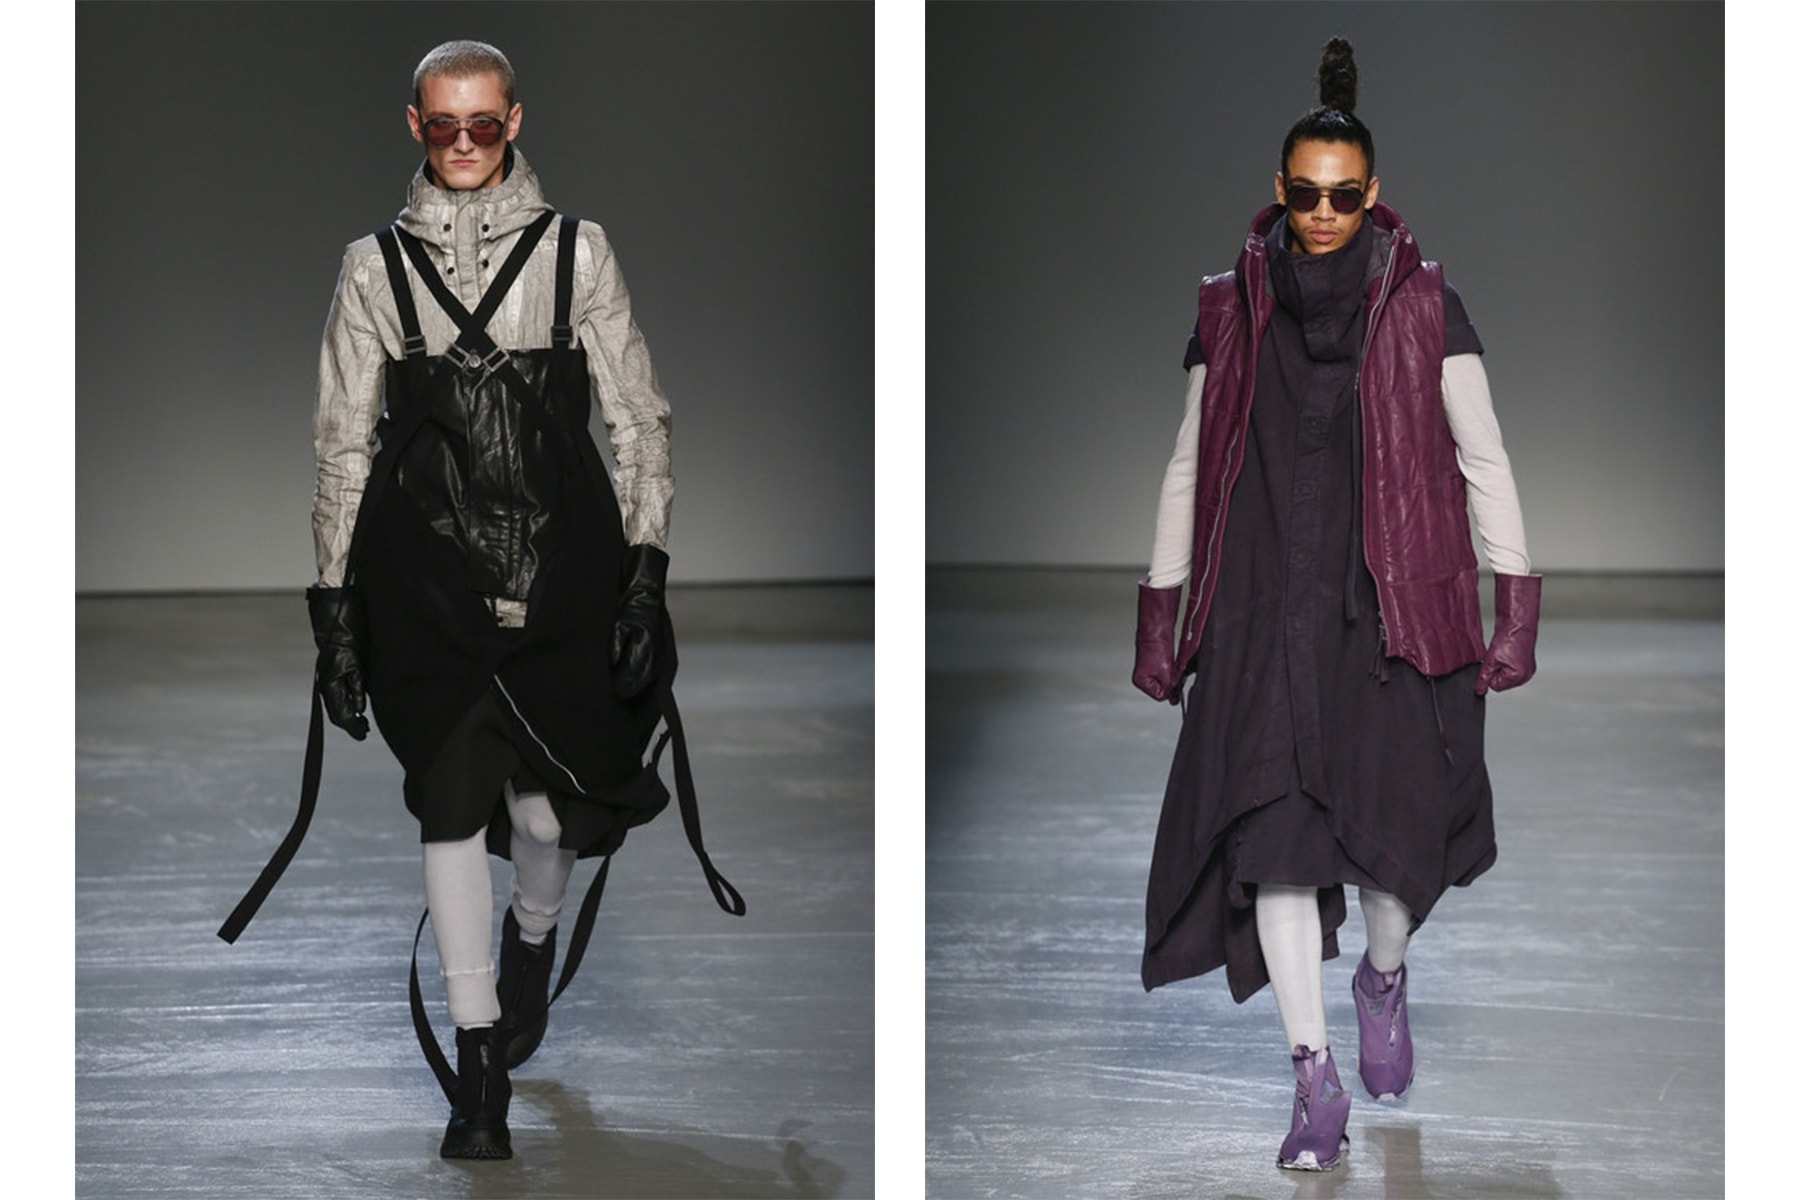 HYPEBEAST が選ぶ Paris Fashion Week: Men's 2018年秋冬ベストルック Day 3 キム・ジョーンズの〈Louis Vuitton〉最後のランウェイに業界人が涙した3日目もパリらしい錚々たるブランドが集結  2018年秋冬のパリファッション・ウィーク3日目は、前日にKim Jones（キム・ジョーンズ）の〈Louis Vuitton（ルイ・ヴィトン）〉退任報道があり、その驚きが収まることなく迎えた1日だった。ロンドン生まれの天才は〈Supreme（シュプリーム）〉との衝撃のコラボレーションなど、ストリートとラグジュアリーの架け橋となり、その垣根を取り除いてくれた立役者であることに疑いようの余地はない。あくまで筆者の推測の域ではあるが、世界屈指のメゾンとして確固たる地位を築いてきたブランドだけに、KJの挑戦という旅路では公にならない“何か”があったのではないだろうか。  集大成となるコレクションではピースサインのグラフィックでLVロゴを表現したニットやフットボールシャツなどを披露し、〈Louis Vuitton〉への感謝と愛を公言。また、フィナーレにKate Moss（ケイト・モス）とNaomi Campbell（ナオミ・キャンベル）を両手にして登場したJonesの姿は、後世にも語り継がれる一瞬になるはずだ。  一方で、Day 3は〈Yohji Yamamoto（ヨウジ ヤマモト）〉、〈Dries Van Noten（ドリス ヴァン ノッテン）〉、〈Rick Owens（リック オウエンス）〉といったファッション界屈指のメゾンが登場した1日でもある。上のフォトギャラリーでは、その数あるブランドのベストルックを厳選しているので、是非チェックしてみてほしい。  あわせて、数あるランウェイをハイライト形式でまとめた各都市の日別ベストルックは、以下からご確認を。  2018年秋冬ファッションウィーク 各都市日別ベストルック ロンドン：Day 1 / Day 2 / Day 3 ミラノ：Day 2 / Day 3 / Day 4